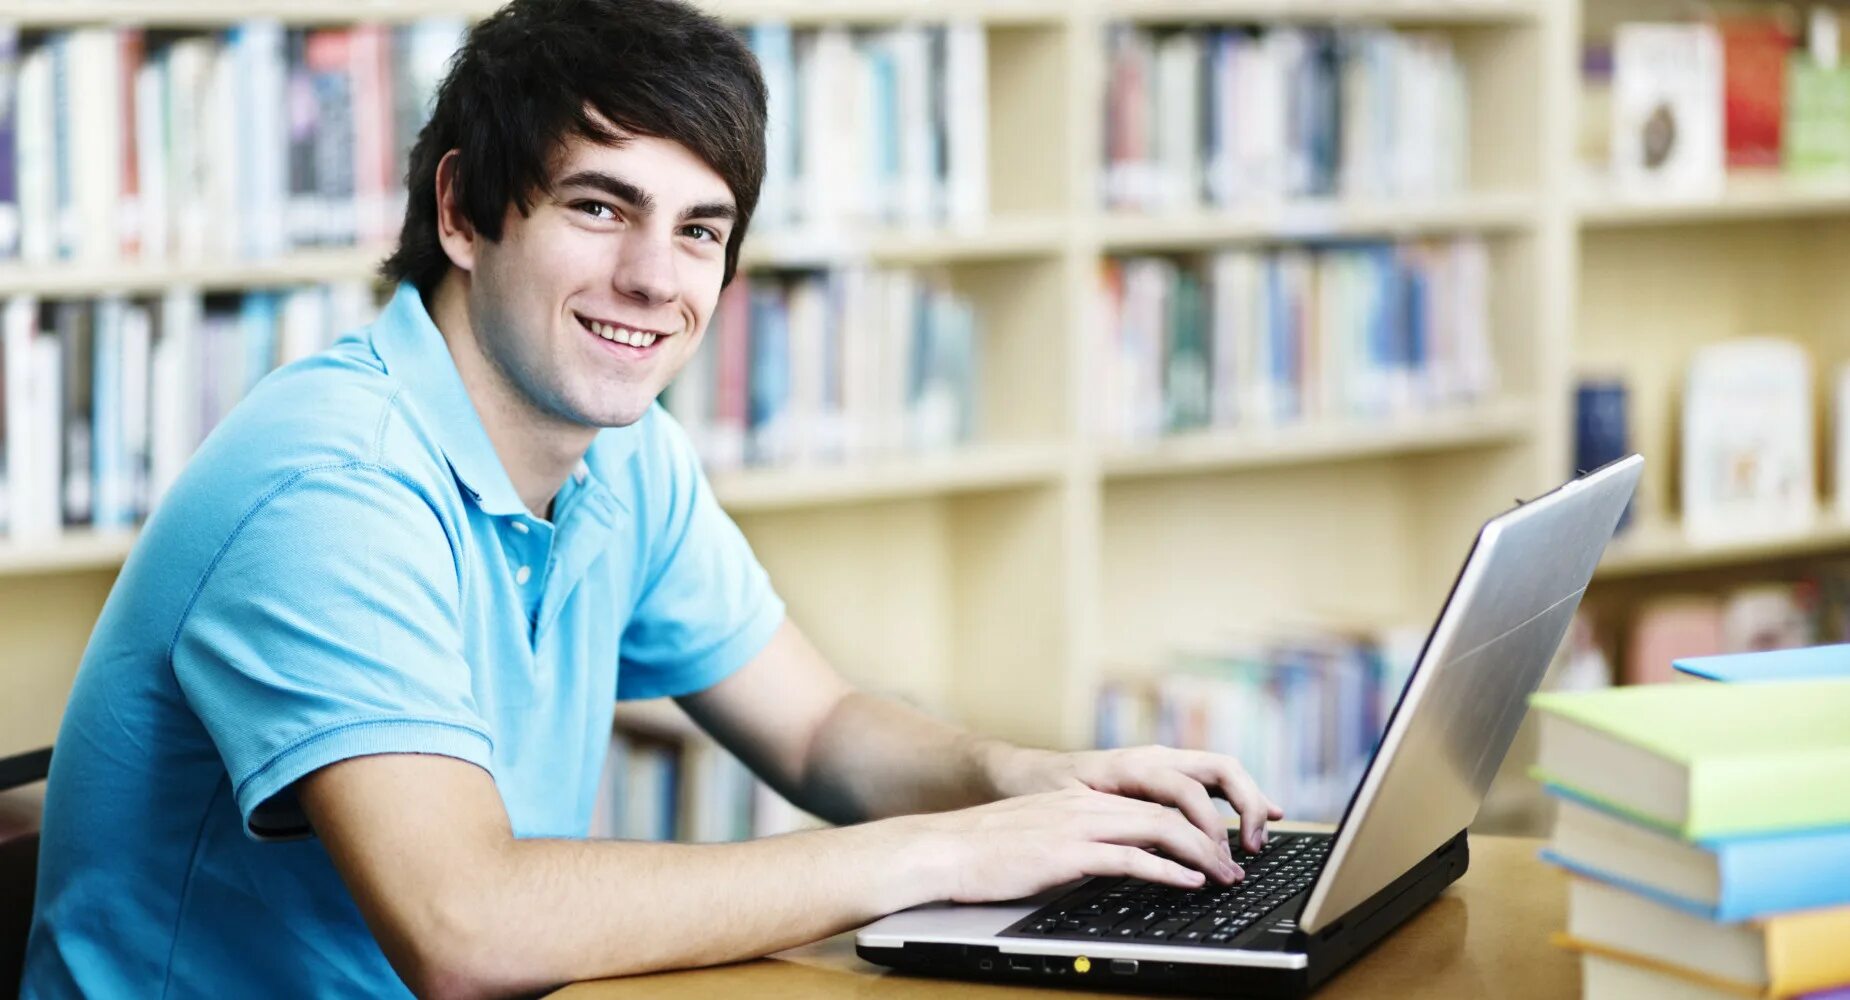 Student html. Человек обучается за компьютером. Студент за учебой. Студент с компьютером. Подросток за компьютером.